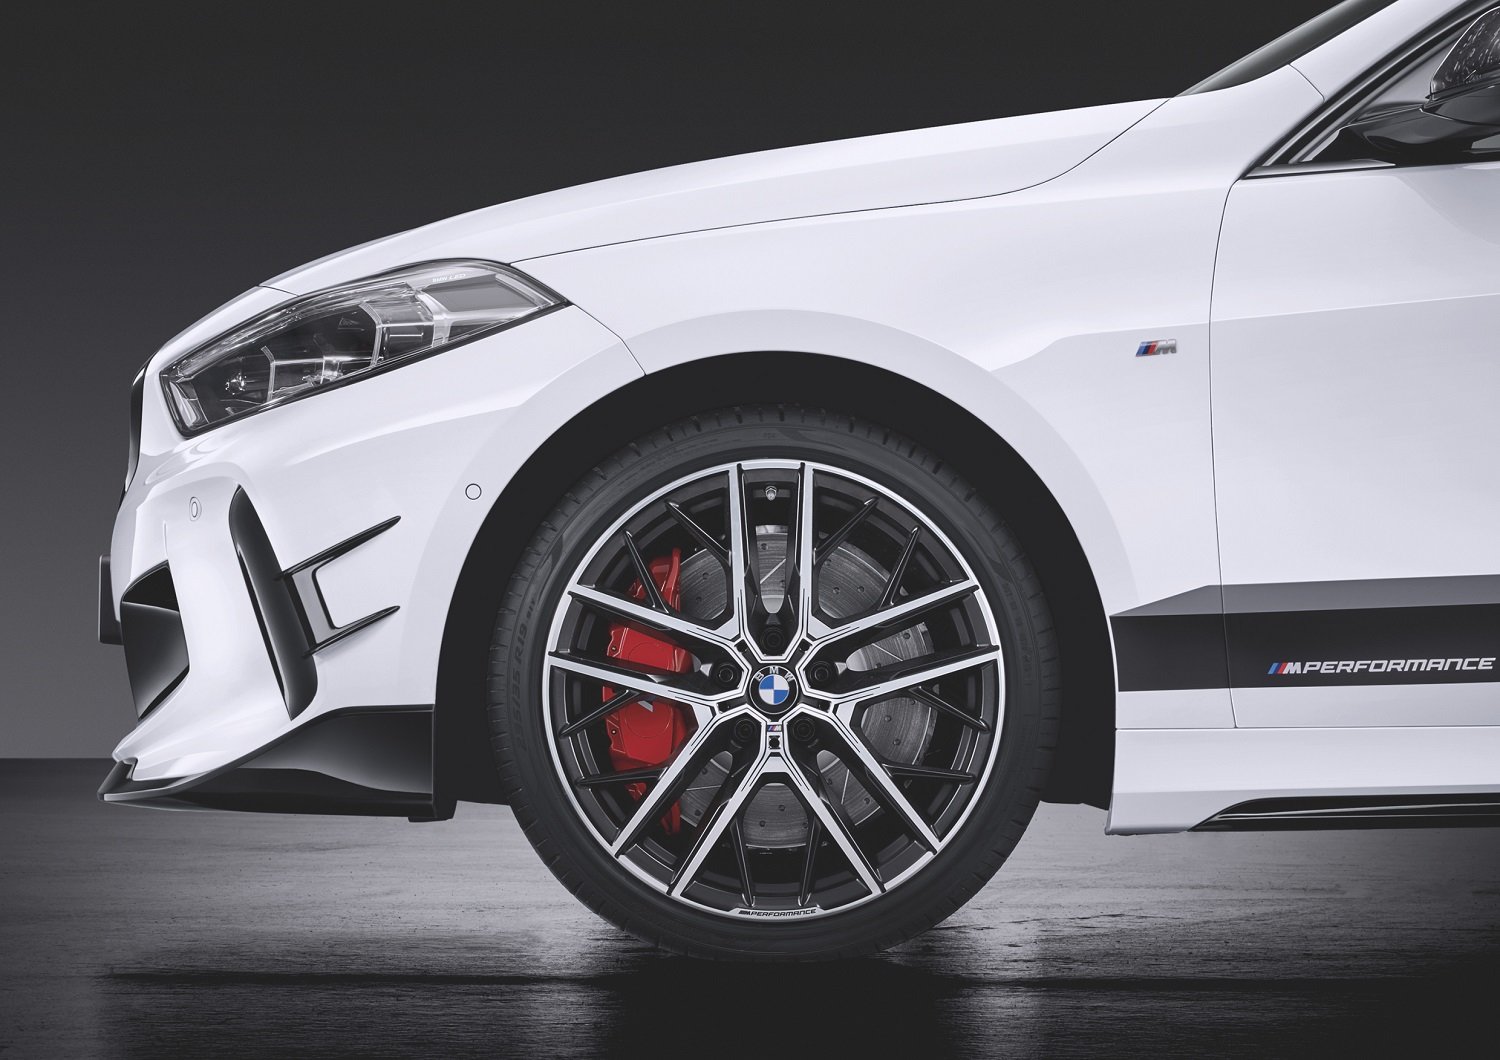 V okamžiku, kdy nové BMW řady 1 vstoupí na trh, bude pro něj k dispozici i rozsáhlá nabídka exkluzivních dílů M Performance Parts, zaměřená na optické zvýraznění sportovního charakteru, stejně jako dynamického potenciálu